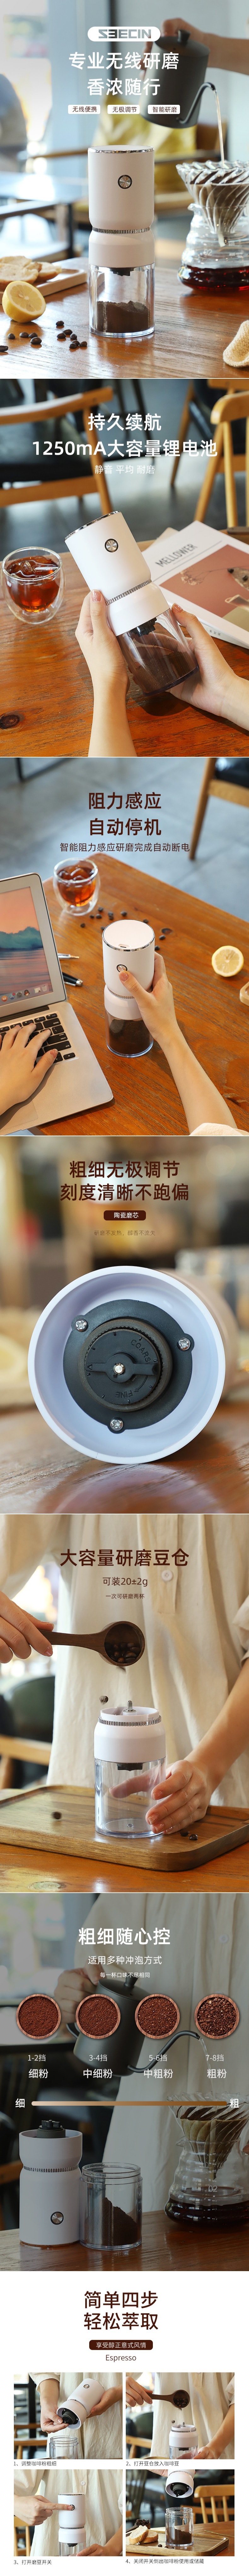 【中国直邮】Seecin 便携式电动磨豆机研磨杯 USB充电 磨咖啡磨豆机研磨器 白色